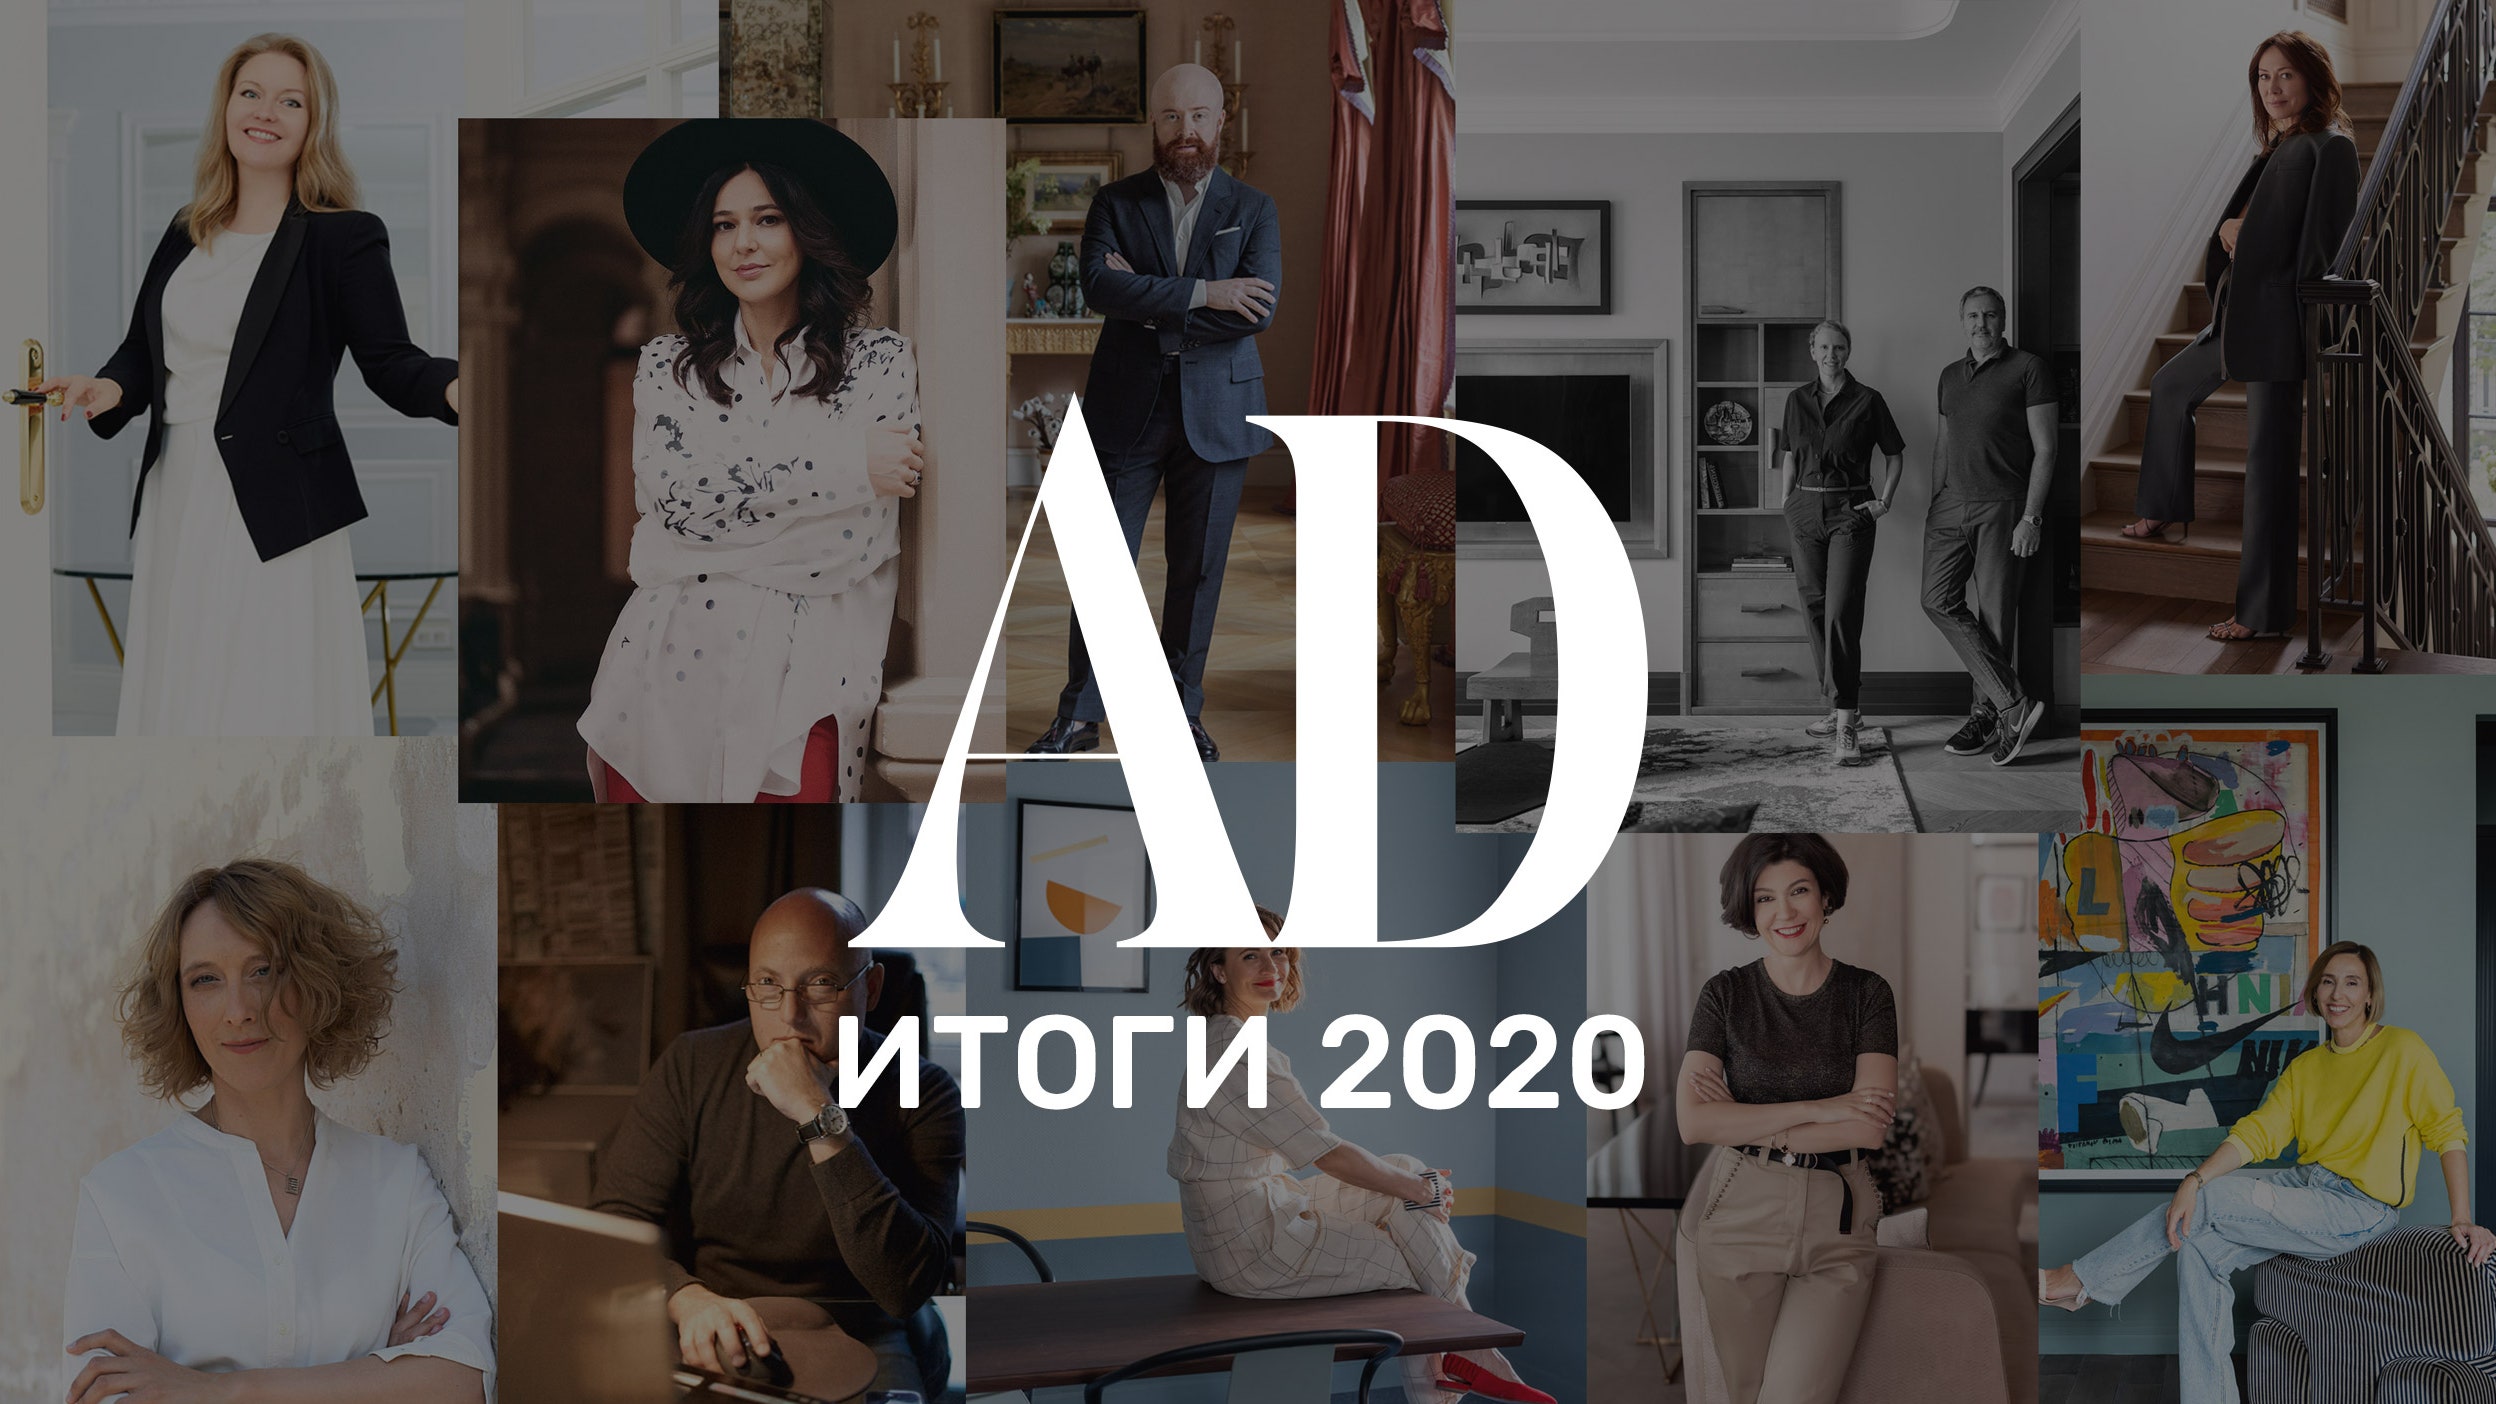 Итоги 2020 года лучшие дизайнеры и архитекторы России